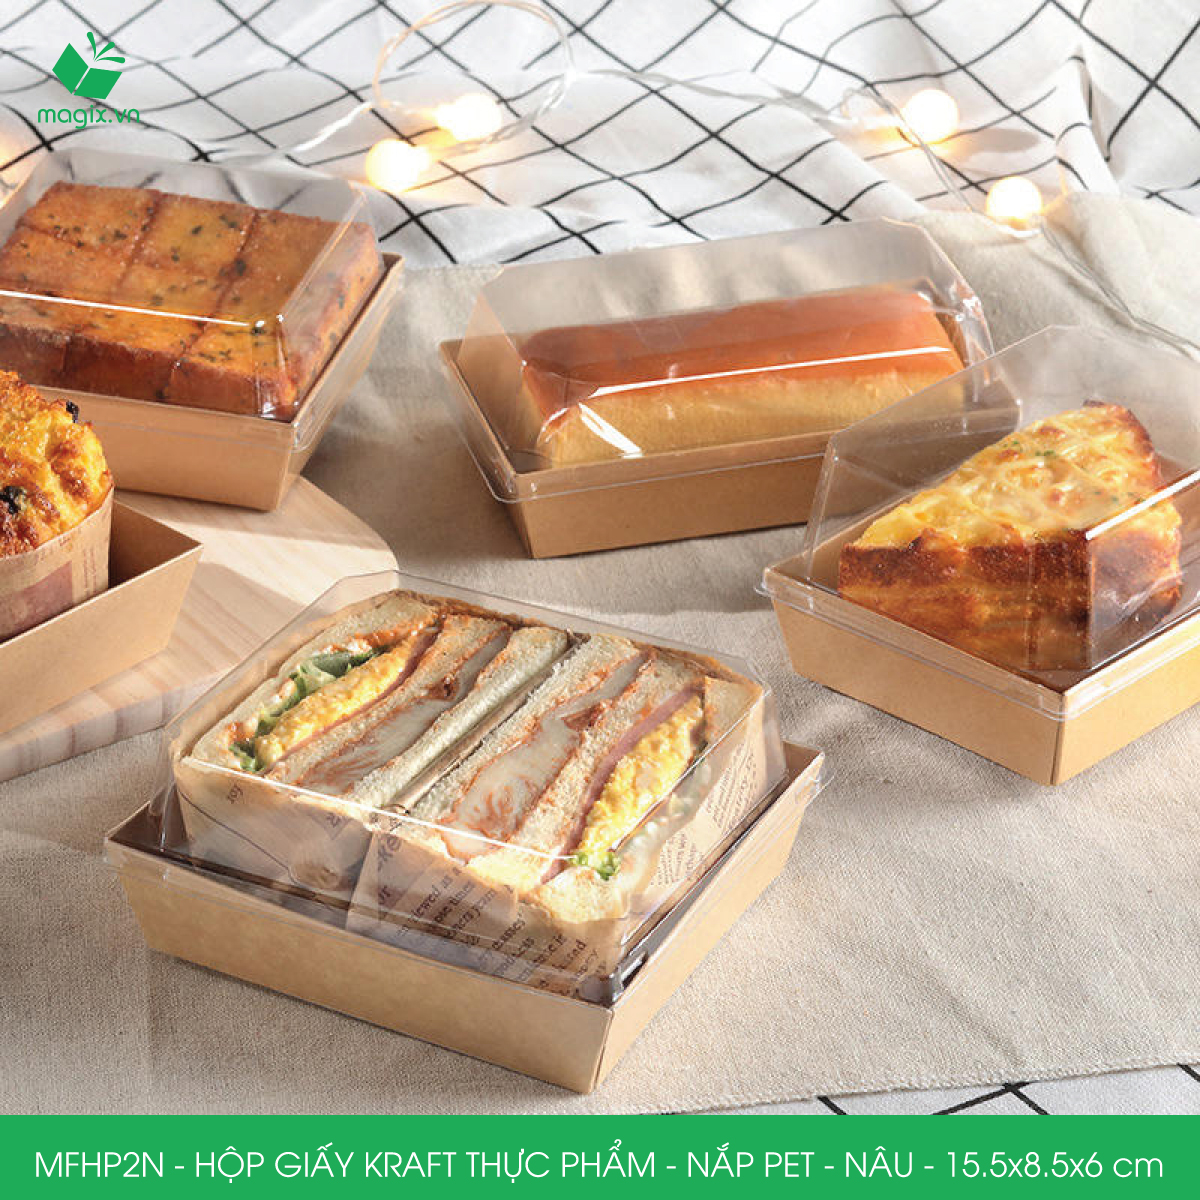 Hình ảnh MFHP2N - 15.5x8.5x6 cm - 25 hộp giấy kraft thực phẩm màu nâu nắp Pet, hộp giấy chữ nhật đựng thức ăn, hộp bánh nắp trong